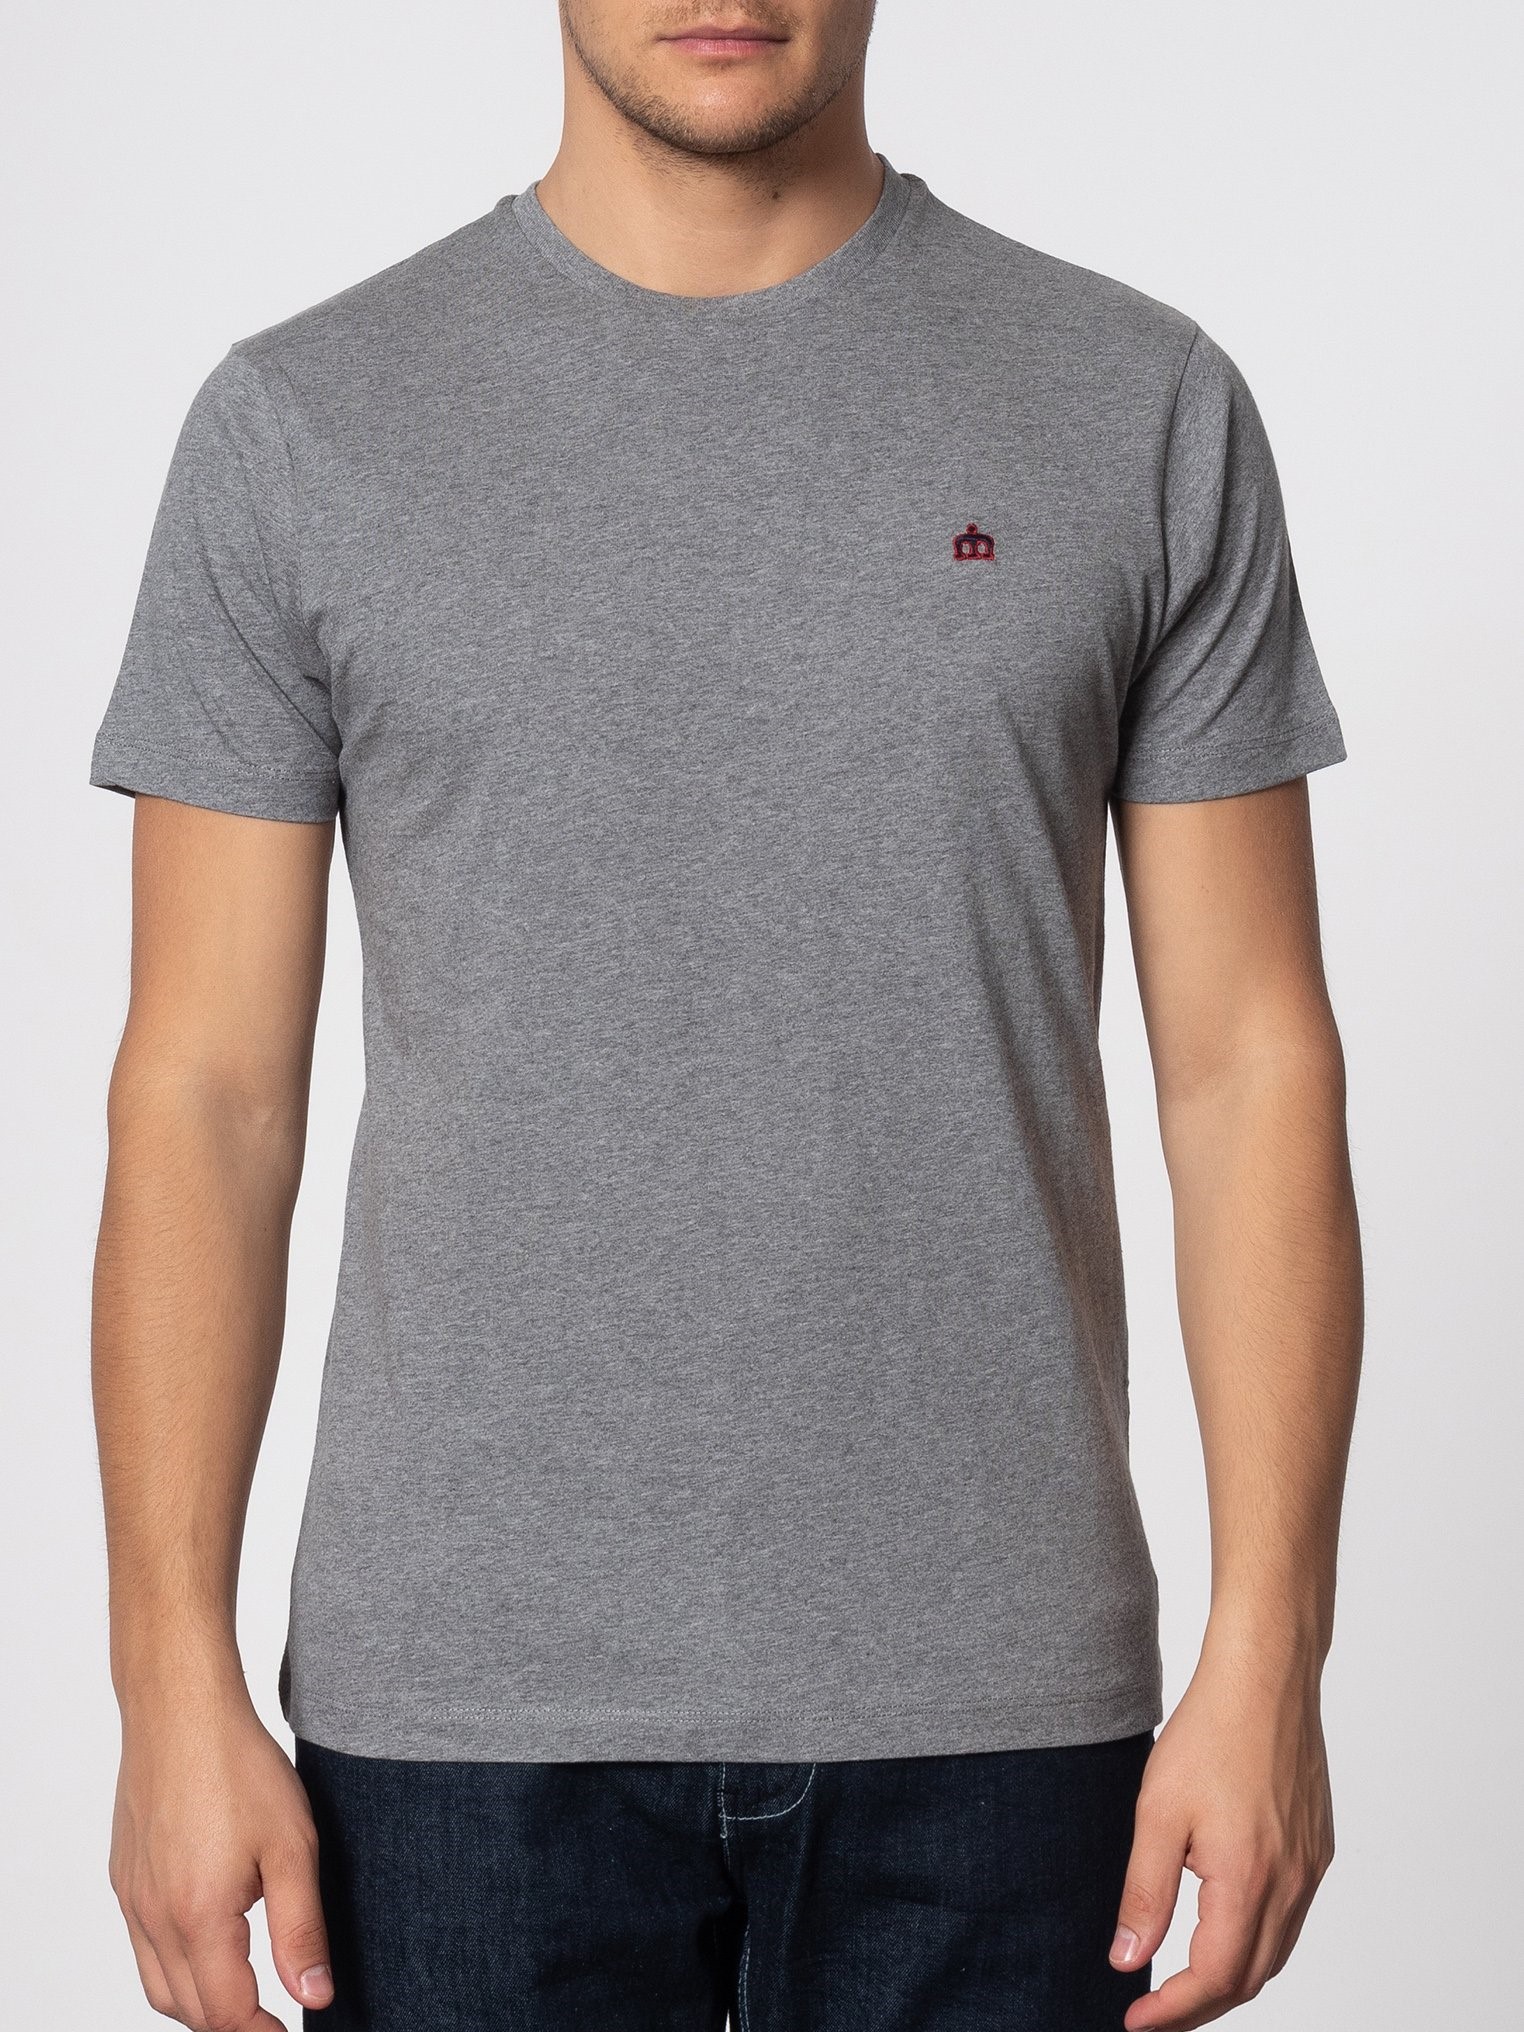 Однотонная мужская футболка Merc Keyport с вышитым на груди контрастным логотипом Корона, серая, купить на официальном сайте 